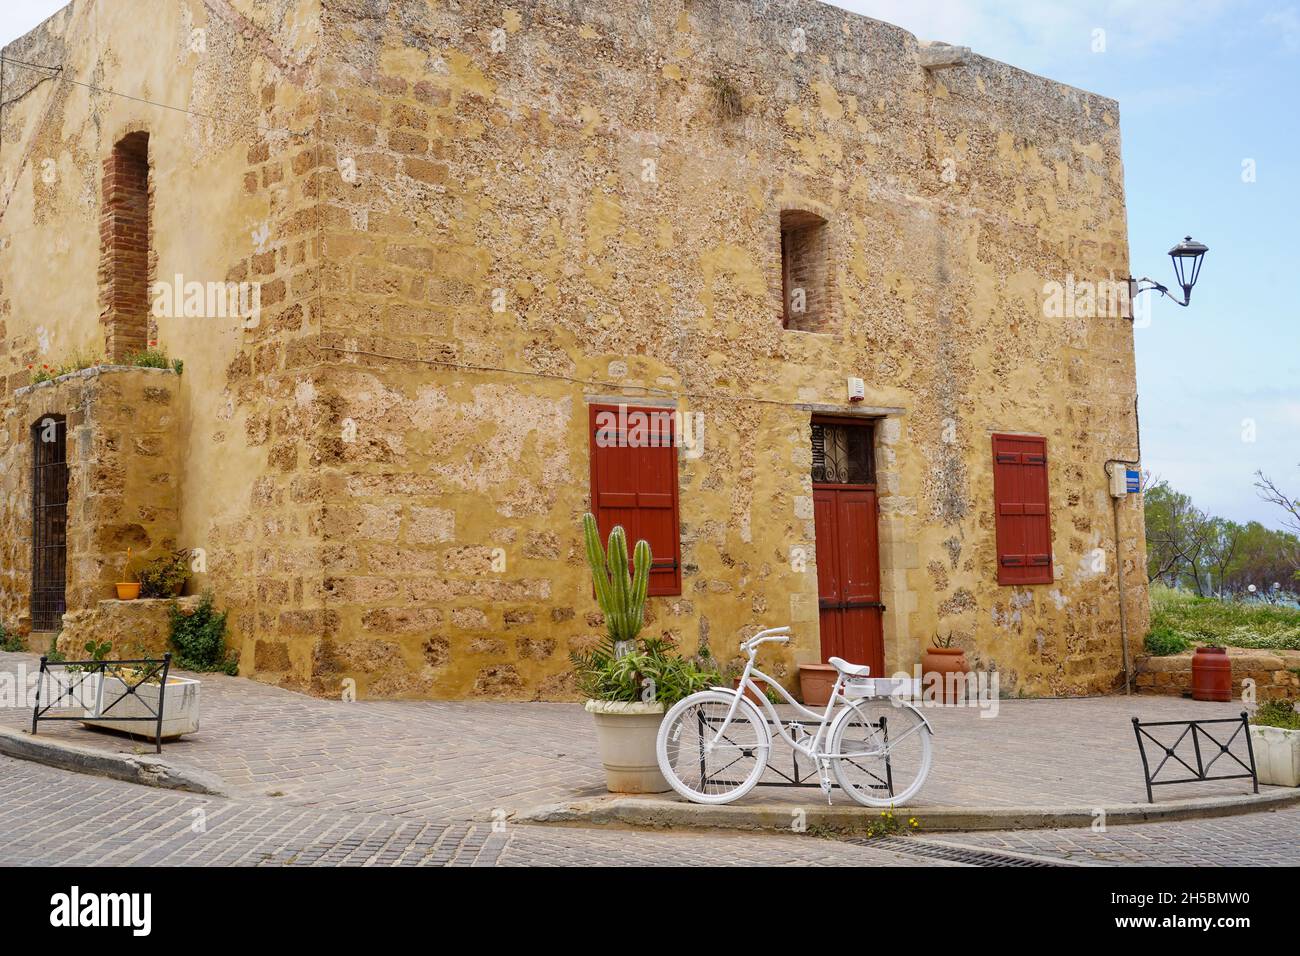 Weißes Fahrrad (weißes Fahrrad, Geisterrad) in Chania, Kreta, Griechenland ein altes, weiß lackiertes Schrottfahrrad als Denkmal für einen Radfahrer, der dabei auf der Straße getötet wurde Stockfoto